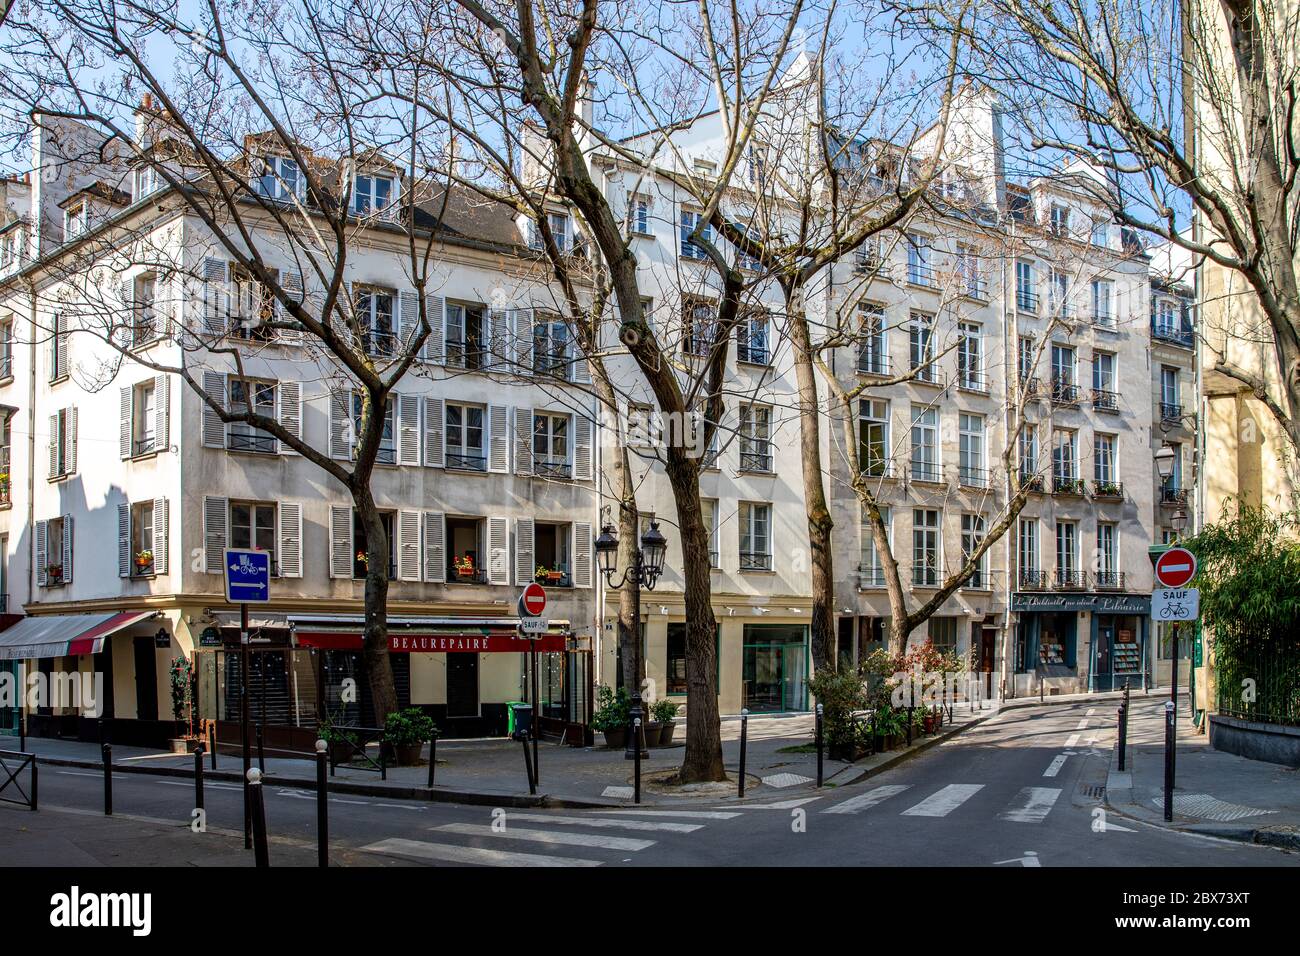 Paris, France - 10 avril 2020 : bâtiments typiques de Haussmannien dans le quartier latin lors des mesures de confinement dues au covid-19 Banque D'Images